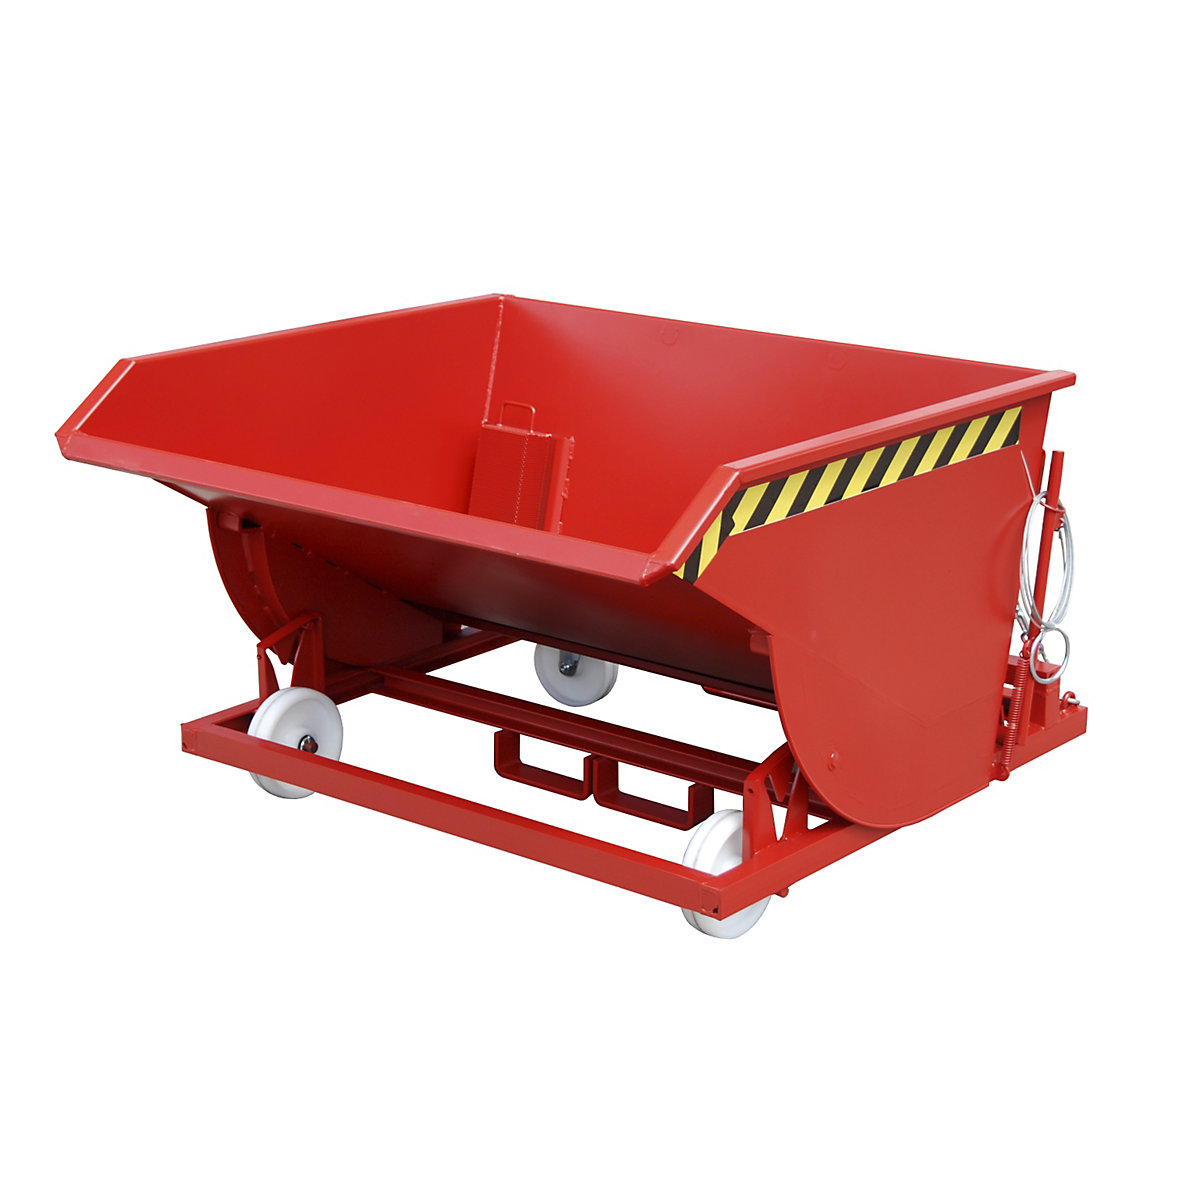 Prekucna posoda za odrezke, s poliamidnimi kolesi – eurokraft pro, prostornina 0,75 m³, ognjeno rdeče barve-11